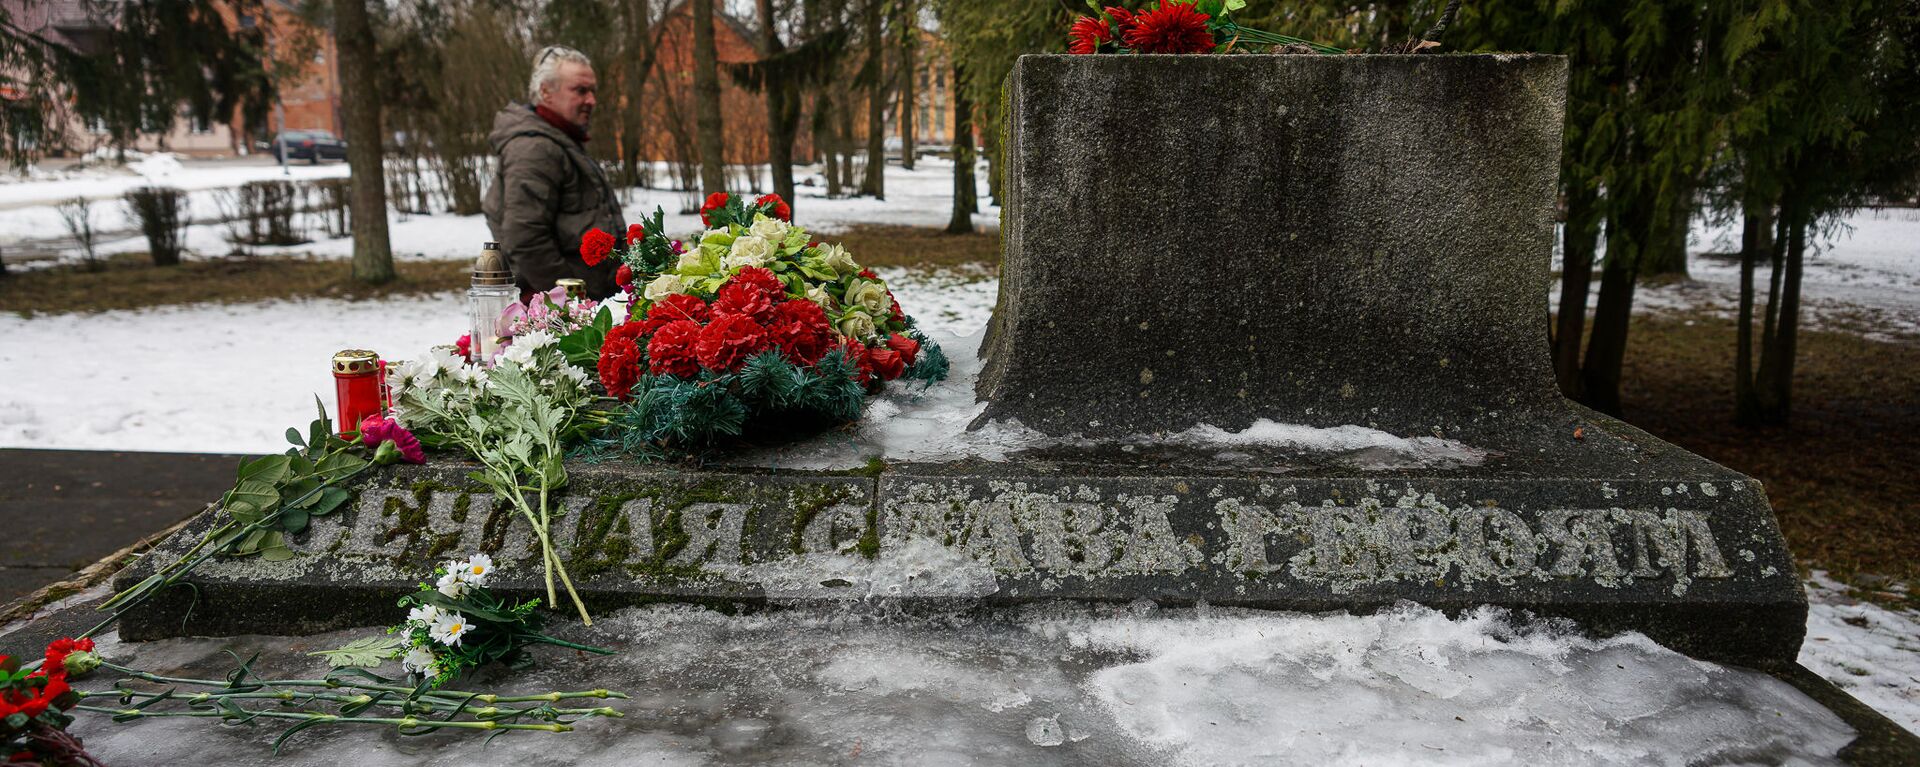 В ночь на 24 февраля в Екабпилсе вандалы украли пушку ЗиС-3 с могилы героев-освободителей Екабпилса от нацистских захватчиков - Sputnik Латвия, 1920, 25.02.2021